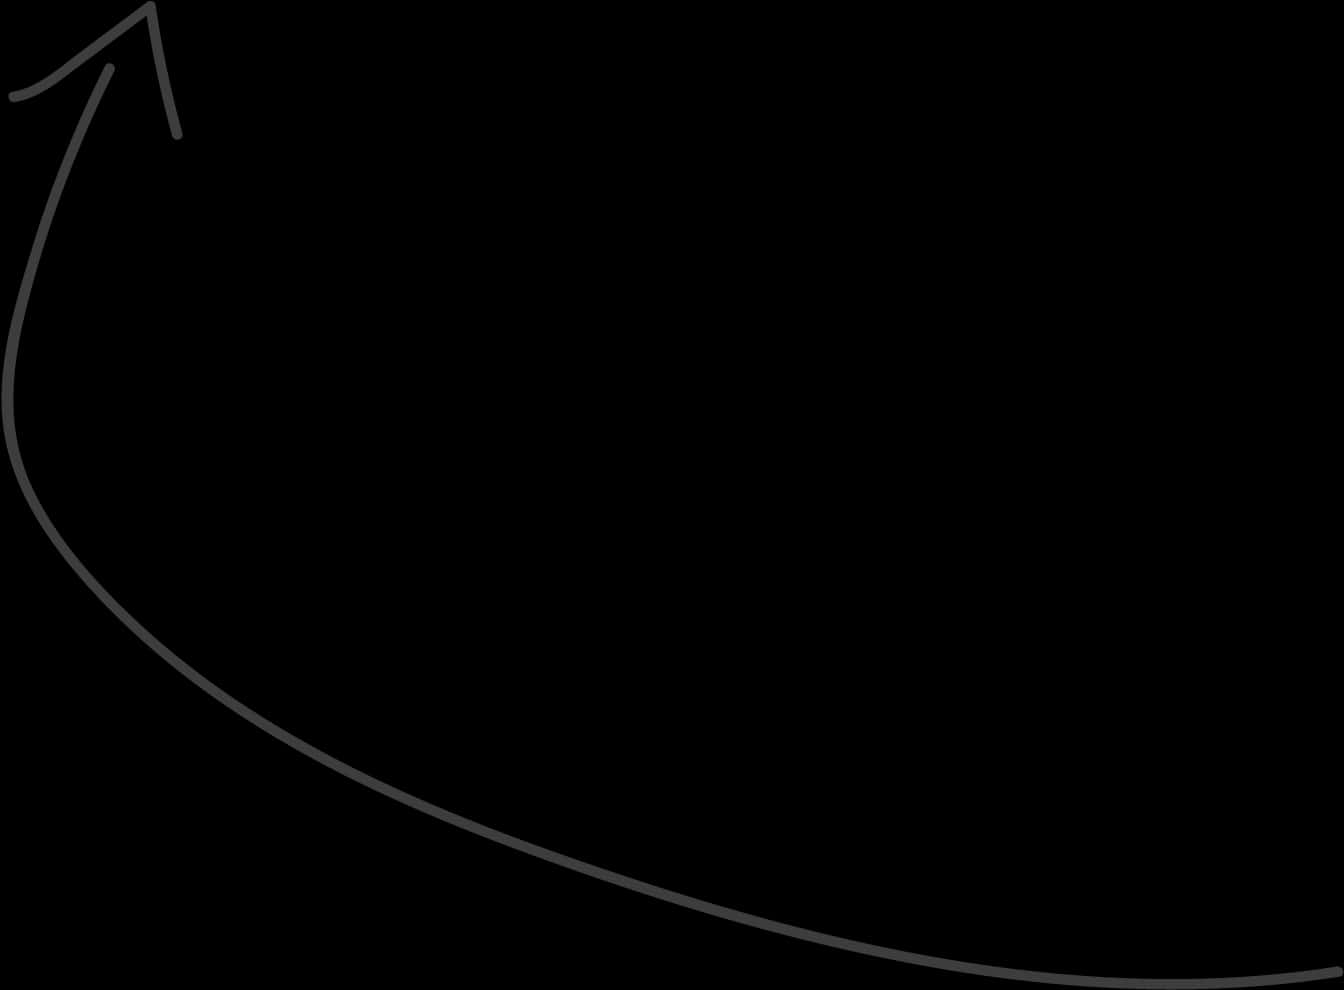 Curved Arrowon Black Background PNG image